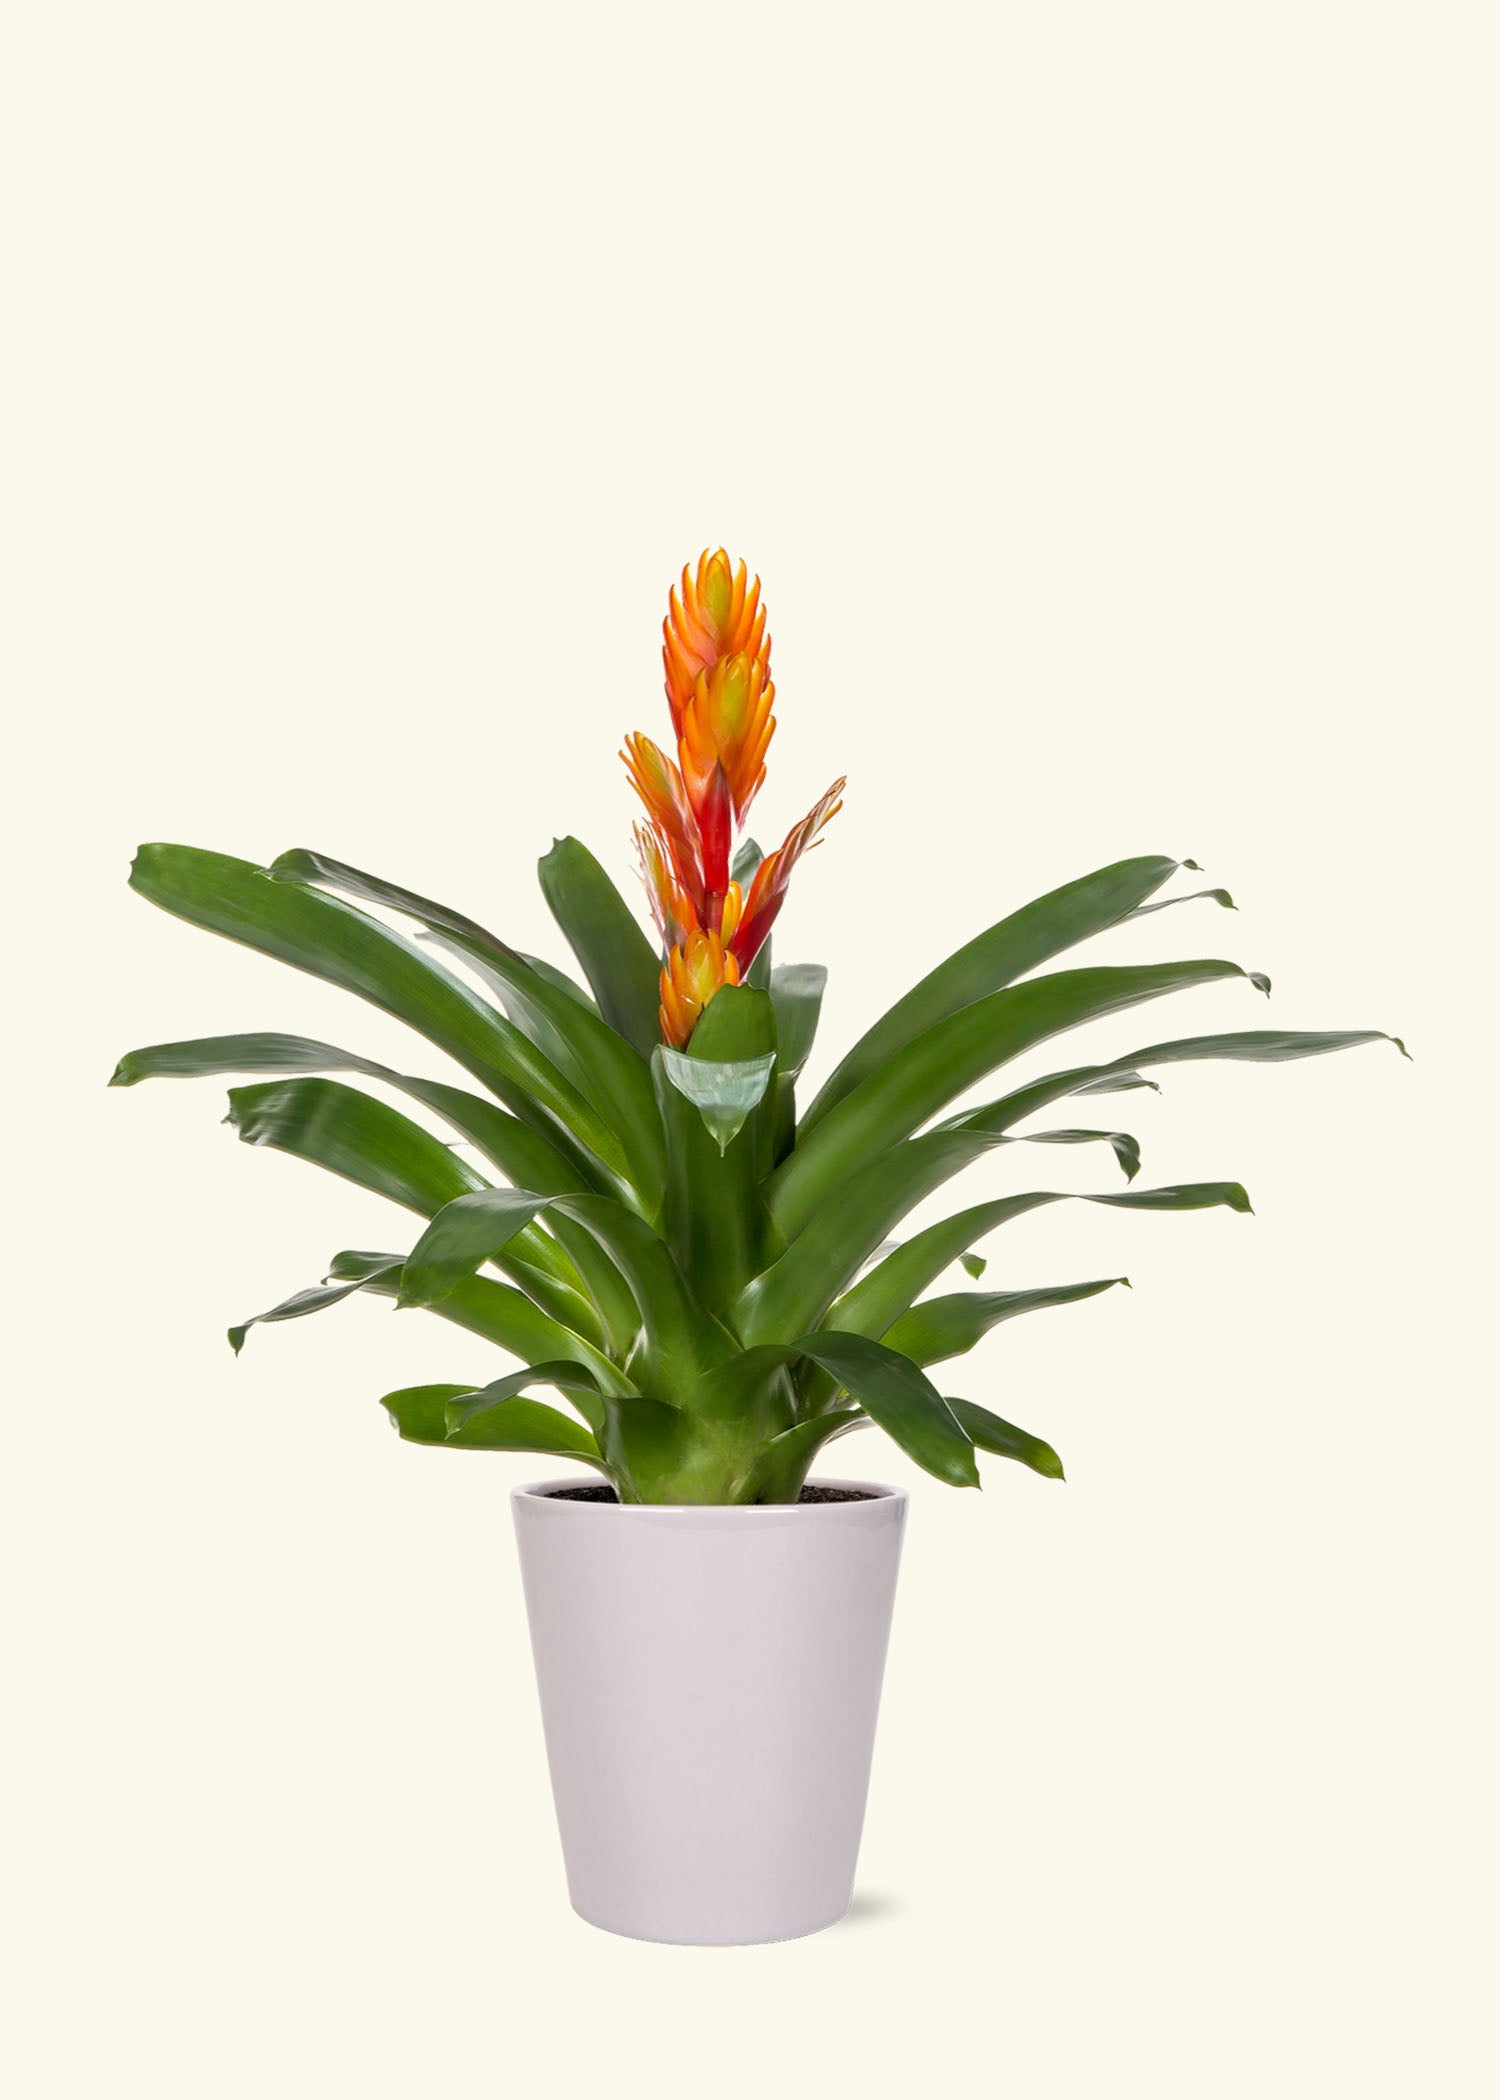 Orange Bromeliad (Vriesea bromeliad) – Rooted